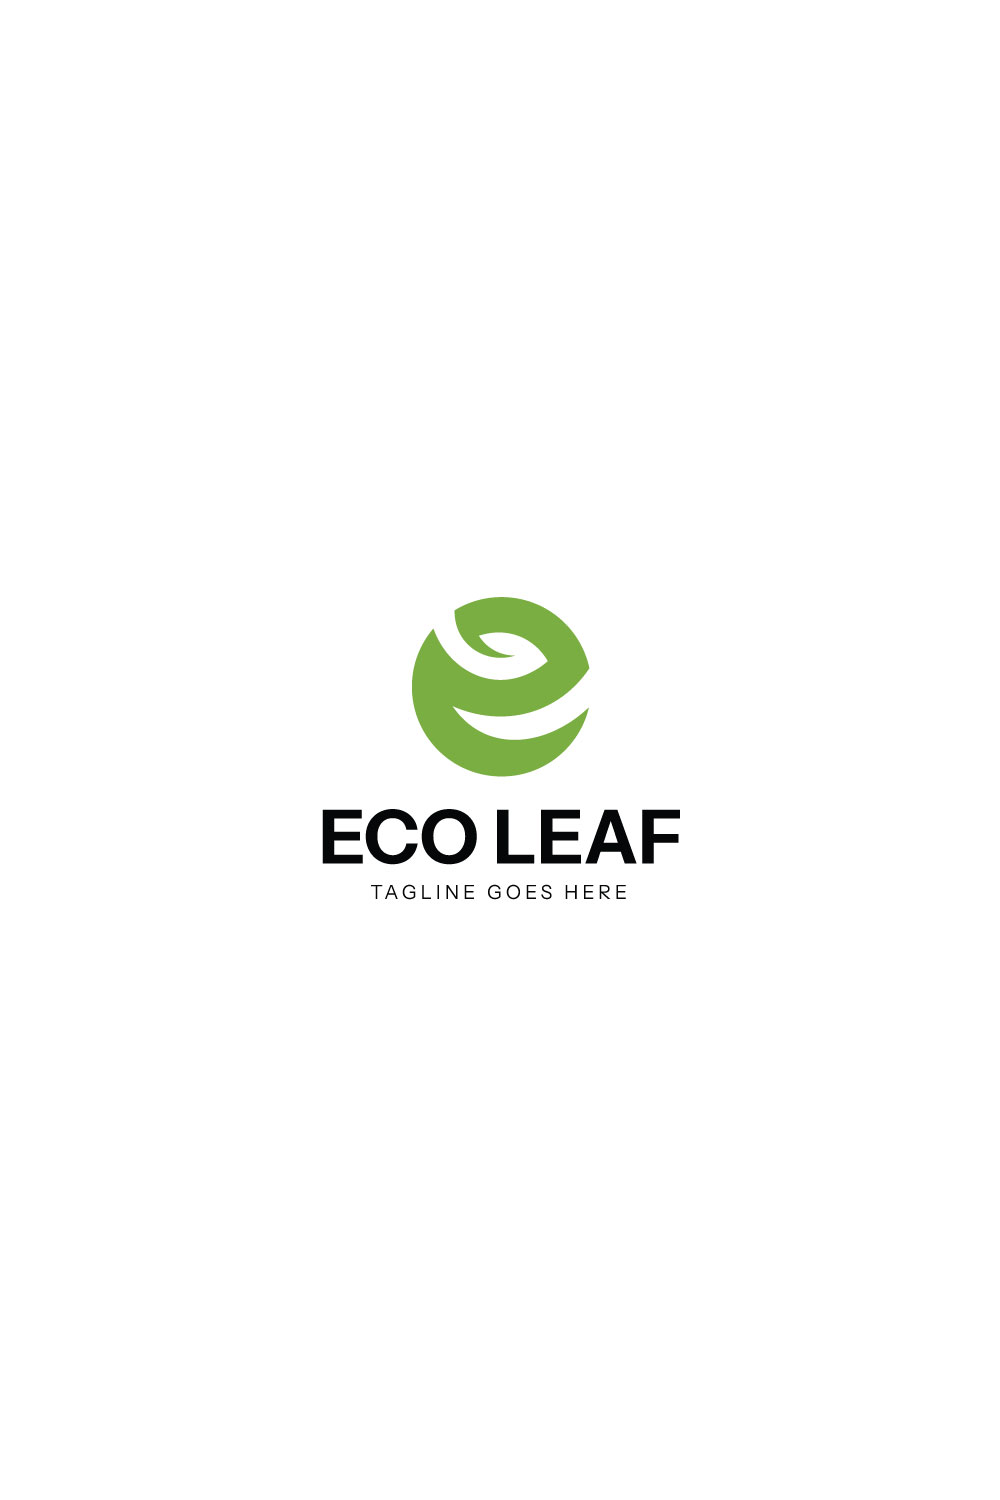 Eco Leaf Letter E Logo design pinterest preview image.